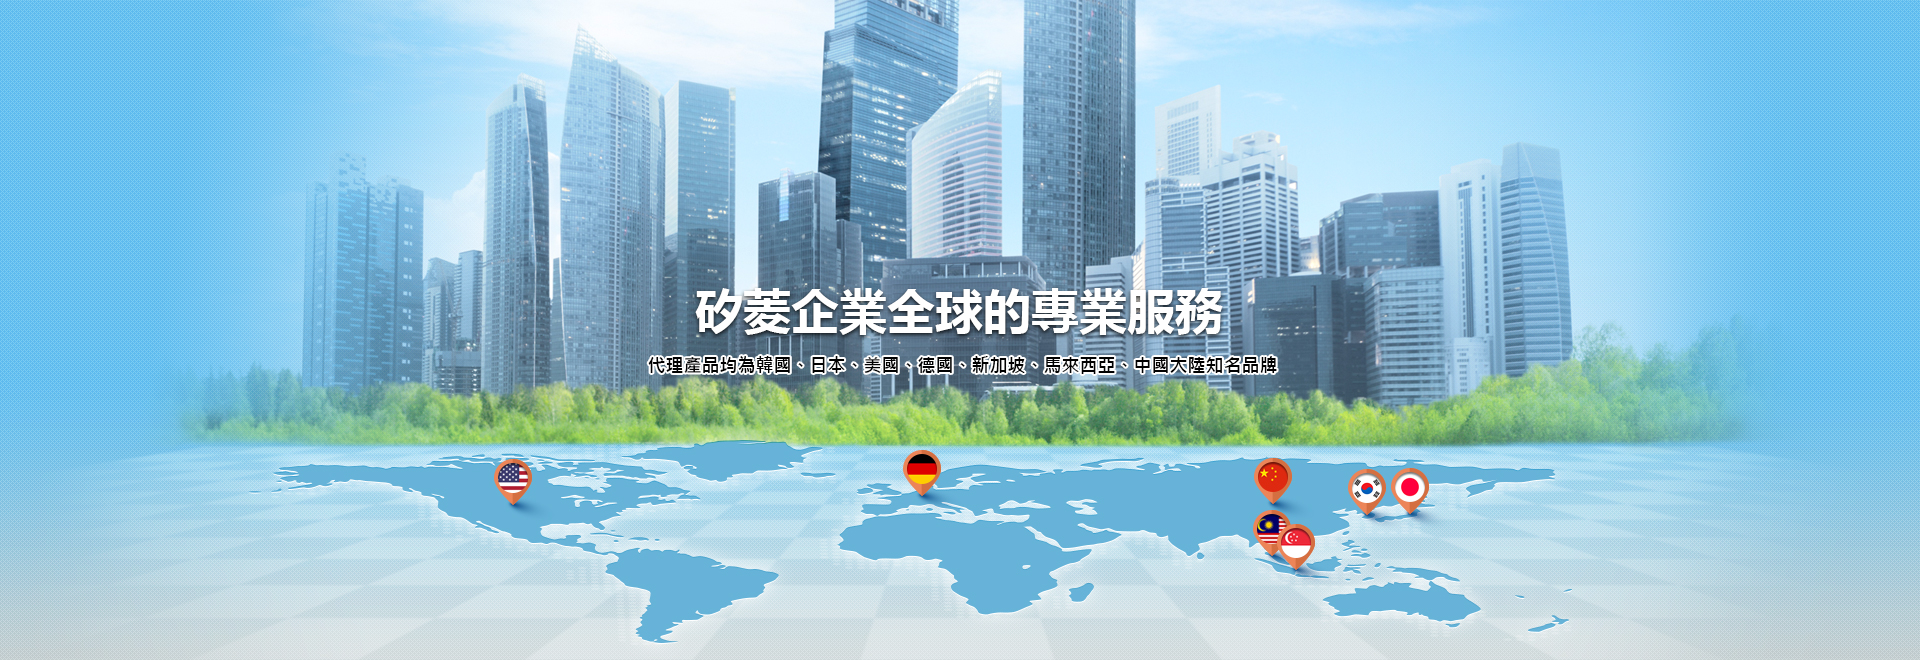 矽菱企業全球的專業服務 代理產品均為韓國、日本、美國、德國、新加坡、馬來西亞、中國大陸知名品牌